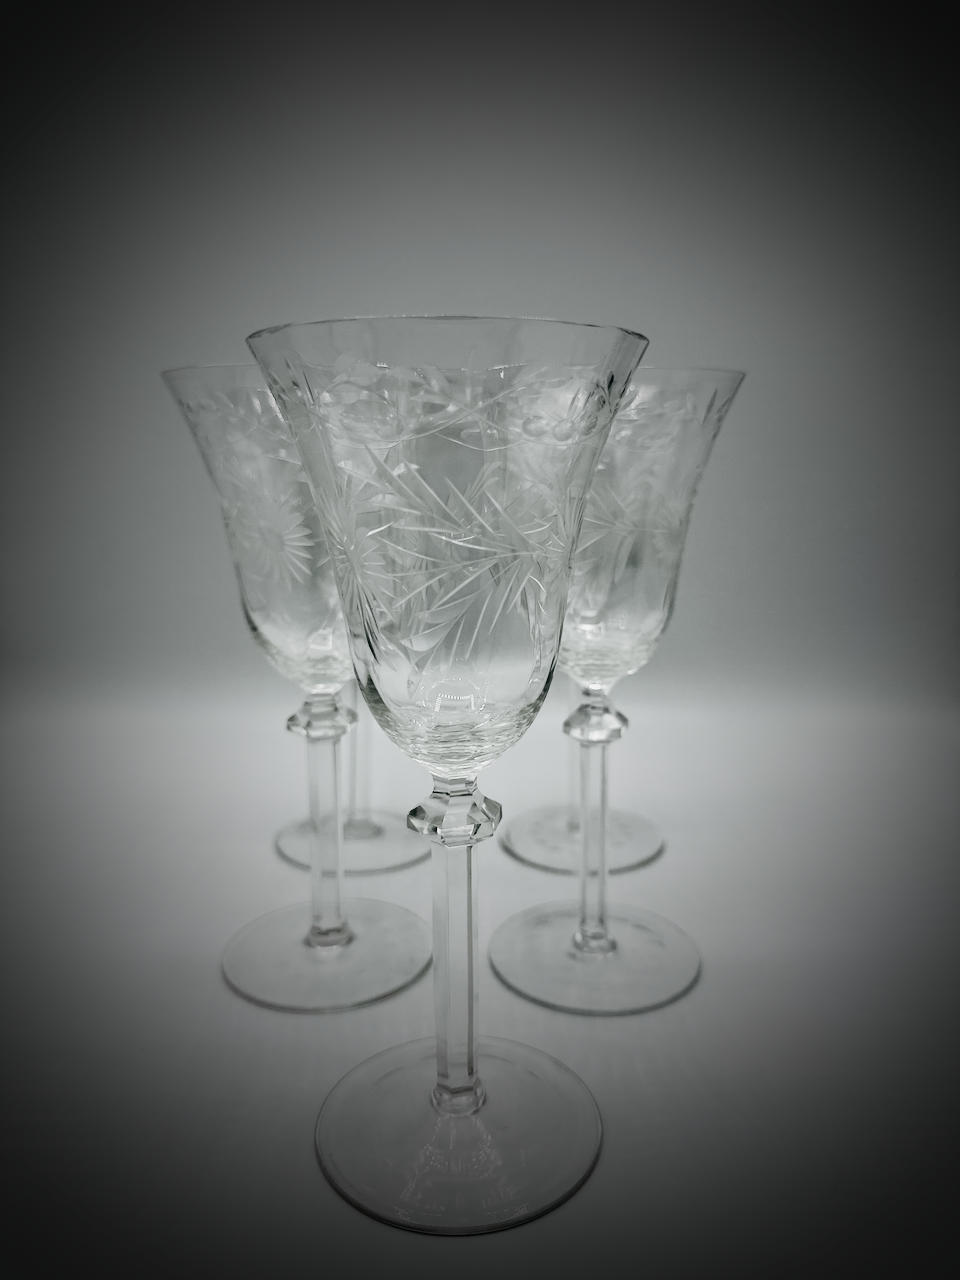 Set of Six Vintage Elegant Wine Glasses with Etched Floral Motif